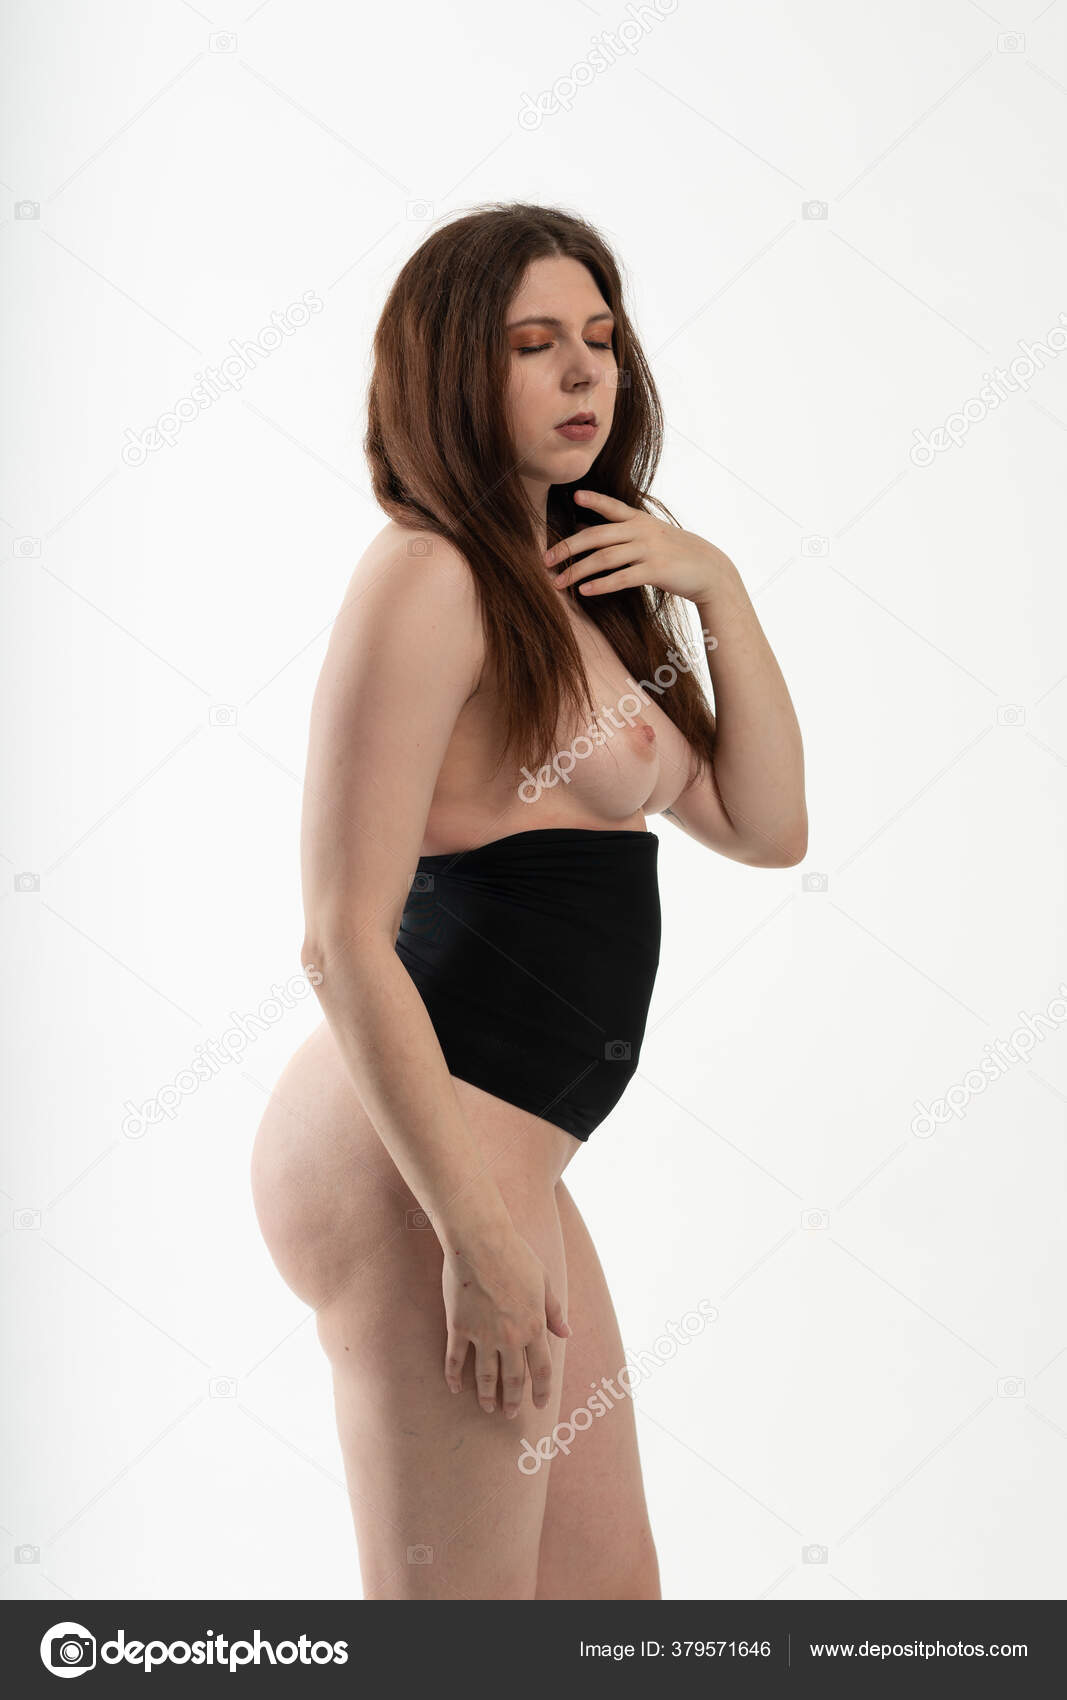 https://st4n.depositphotos.com/10086424/37957/i/1600/depositphotos_379571646-stock-photo-young-beautiful-girl-posing-nude.jpg